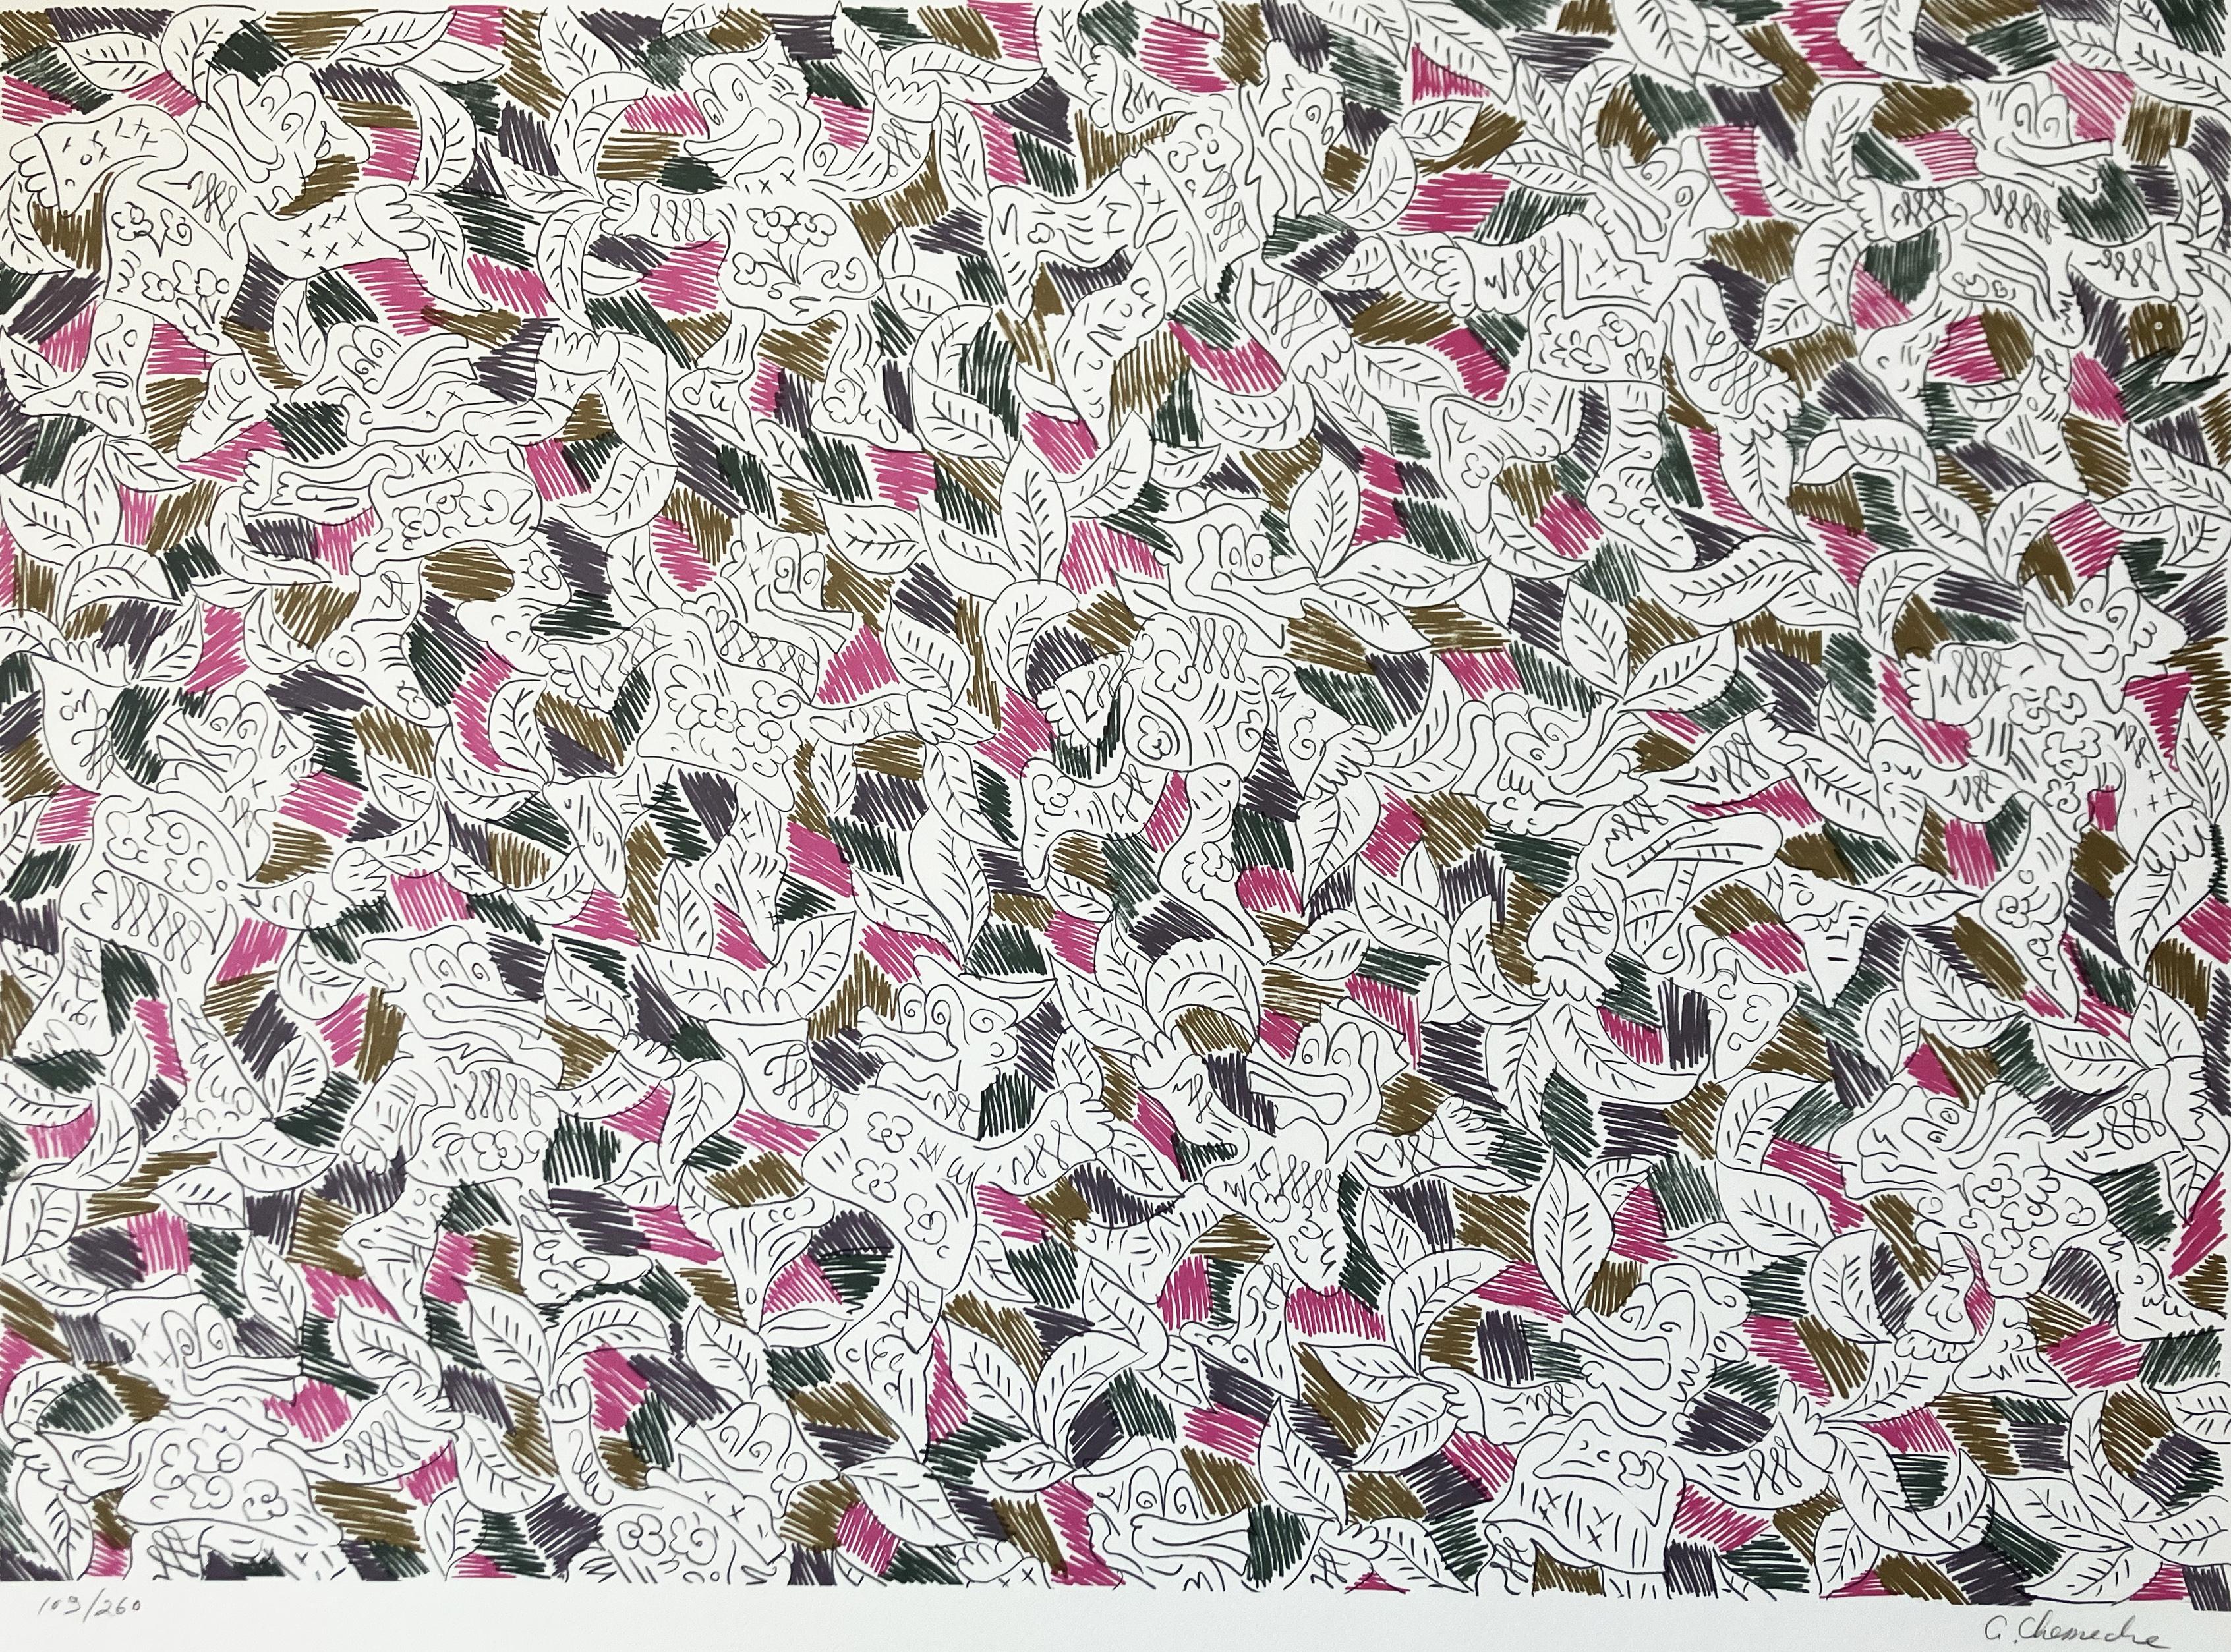 Canards dansant en magenta, vert forêt, marron, gris ardoise - Print de George Chemeche